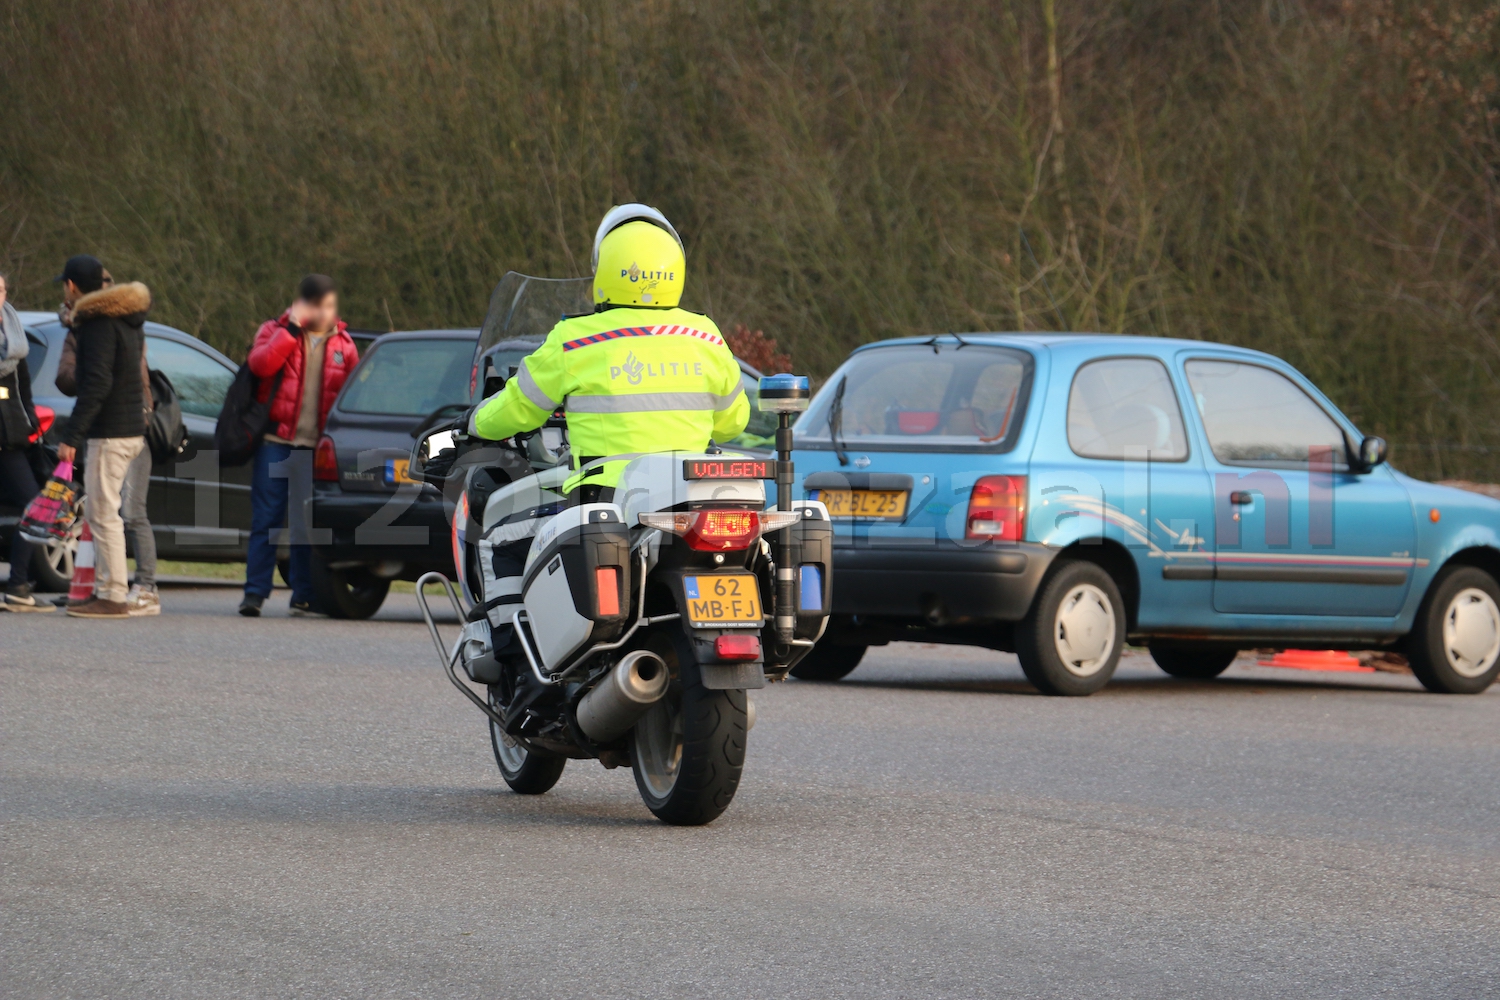 Foto: Politie en belastingdienst houden gezamenlijke verkeerscontrole in Oldenzaal, meerdere voertuigen in beslag genomen